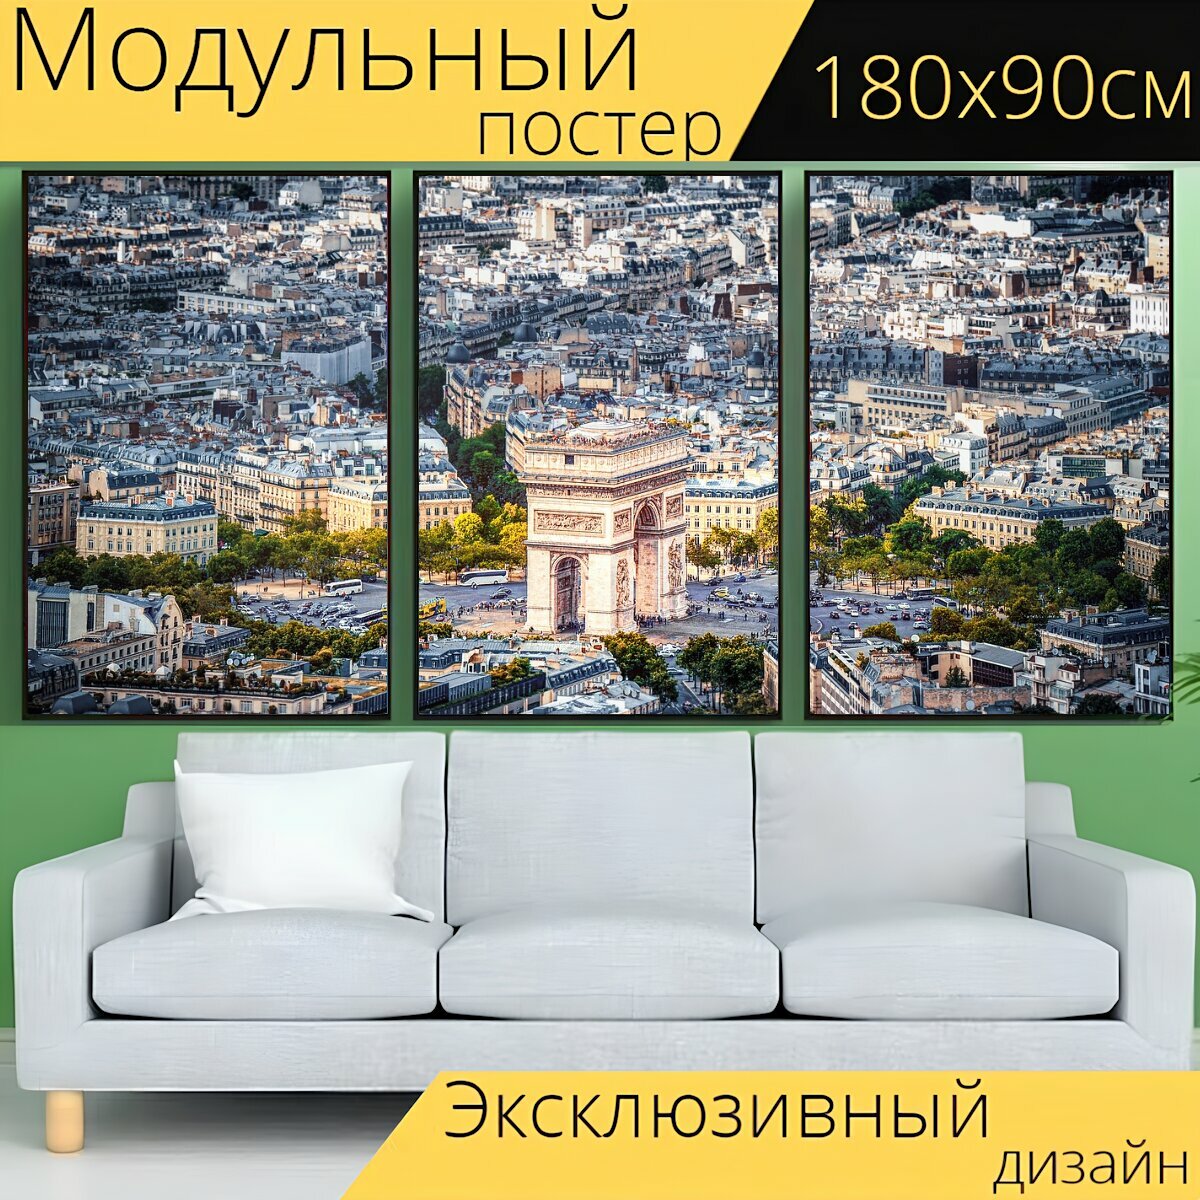 Модульный постер "Париж, город, городской пейзаж" 180 x 90 см. для интерьера